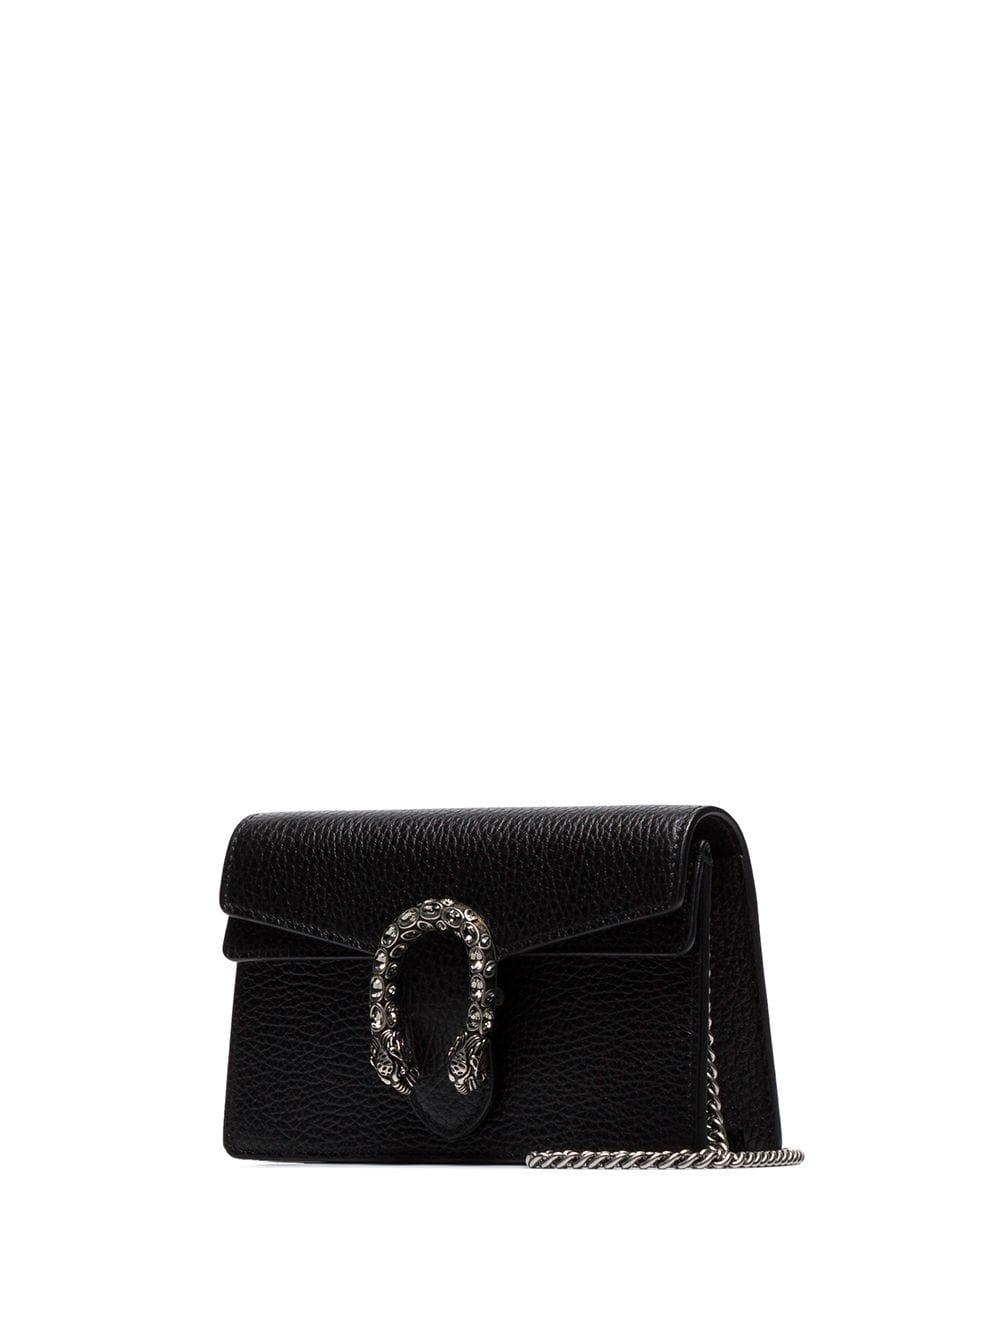 Gucci Dionysus Leather Super Mini Bag in Black - Lyst